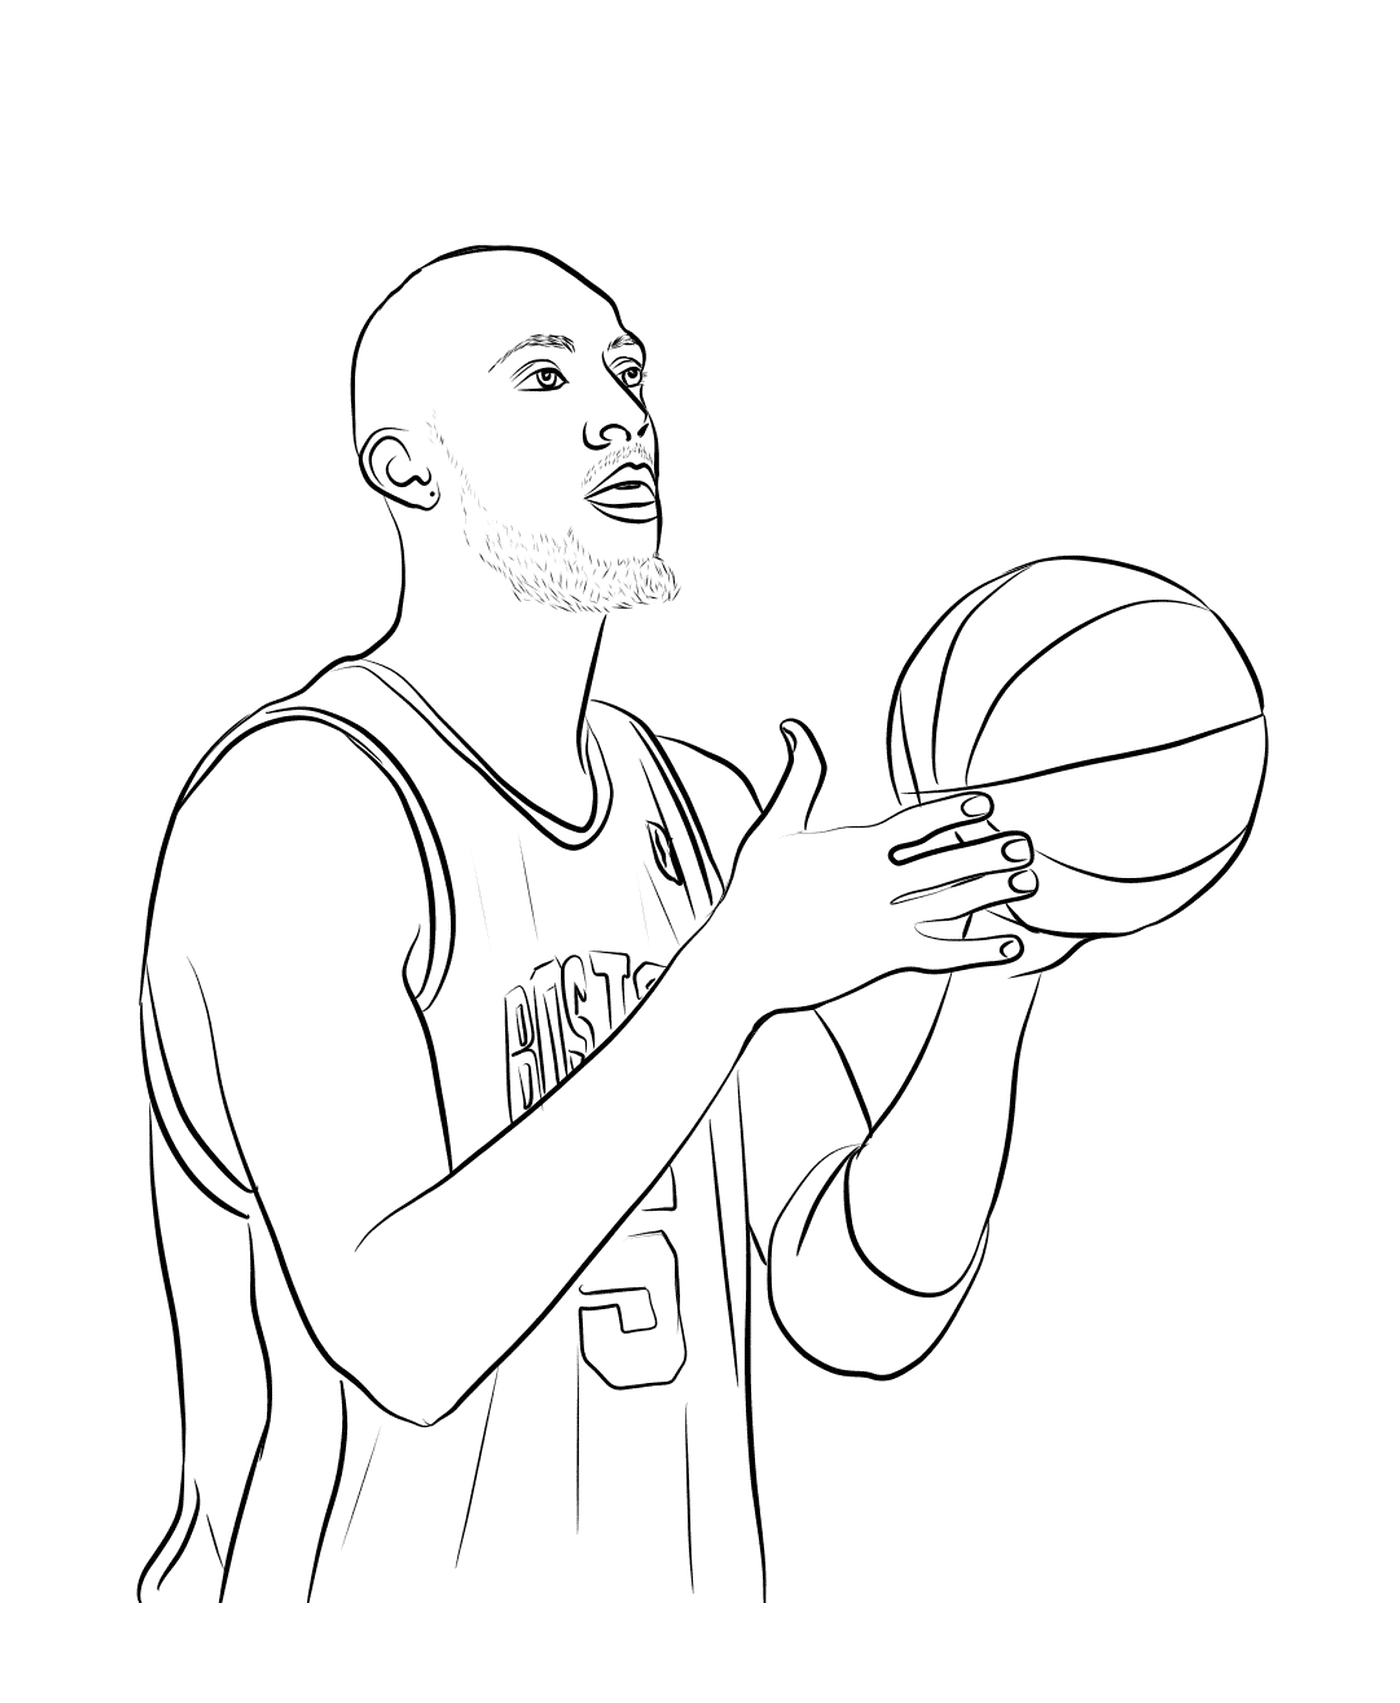  Kevin Garnett segura uma bola de basquete 